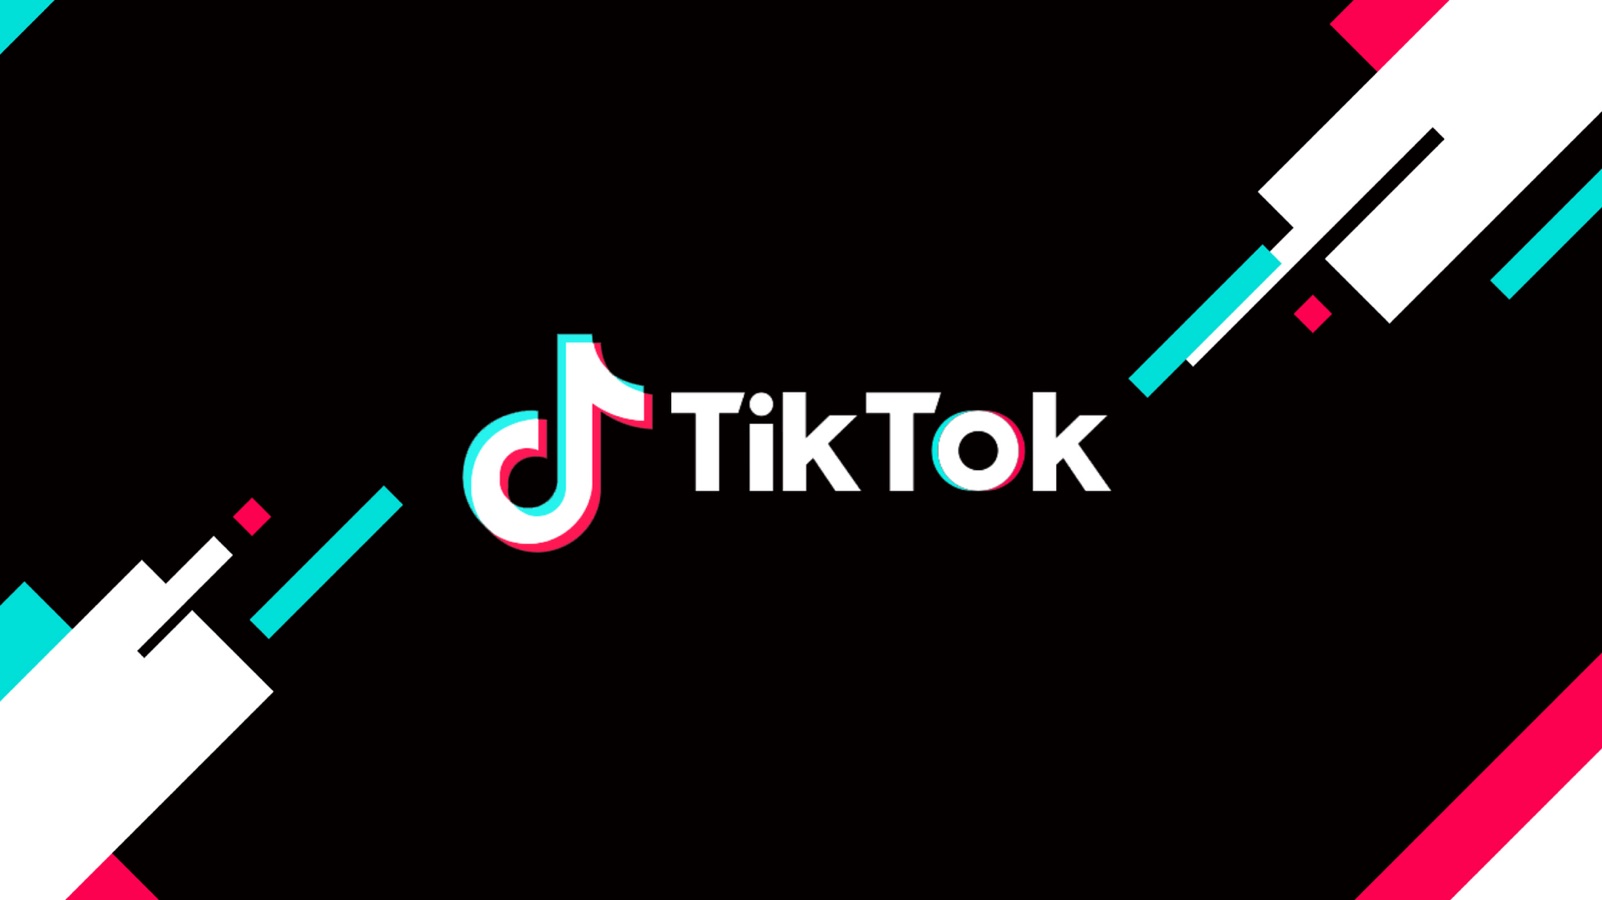 TikTok transmite jogos e conteúdo exclusivo do Brasileirão Feminino  Neoenergia